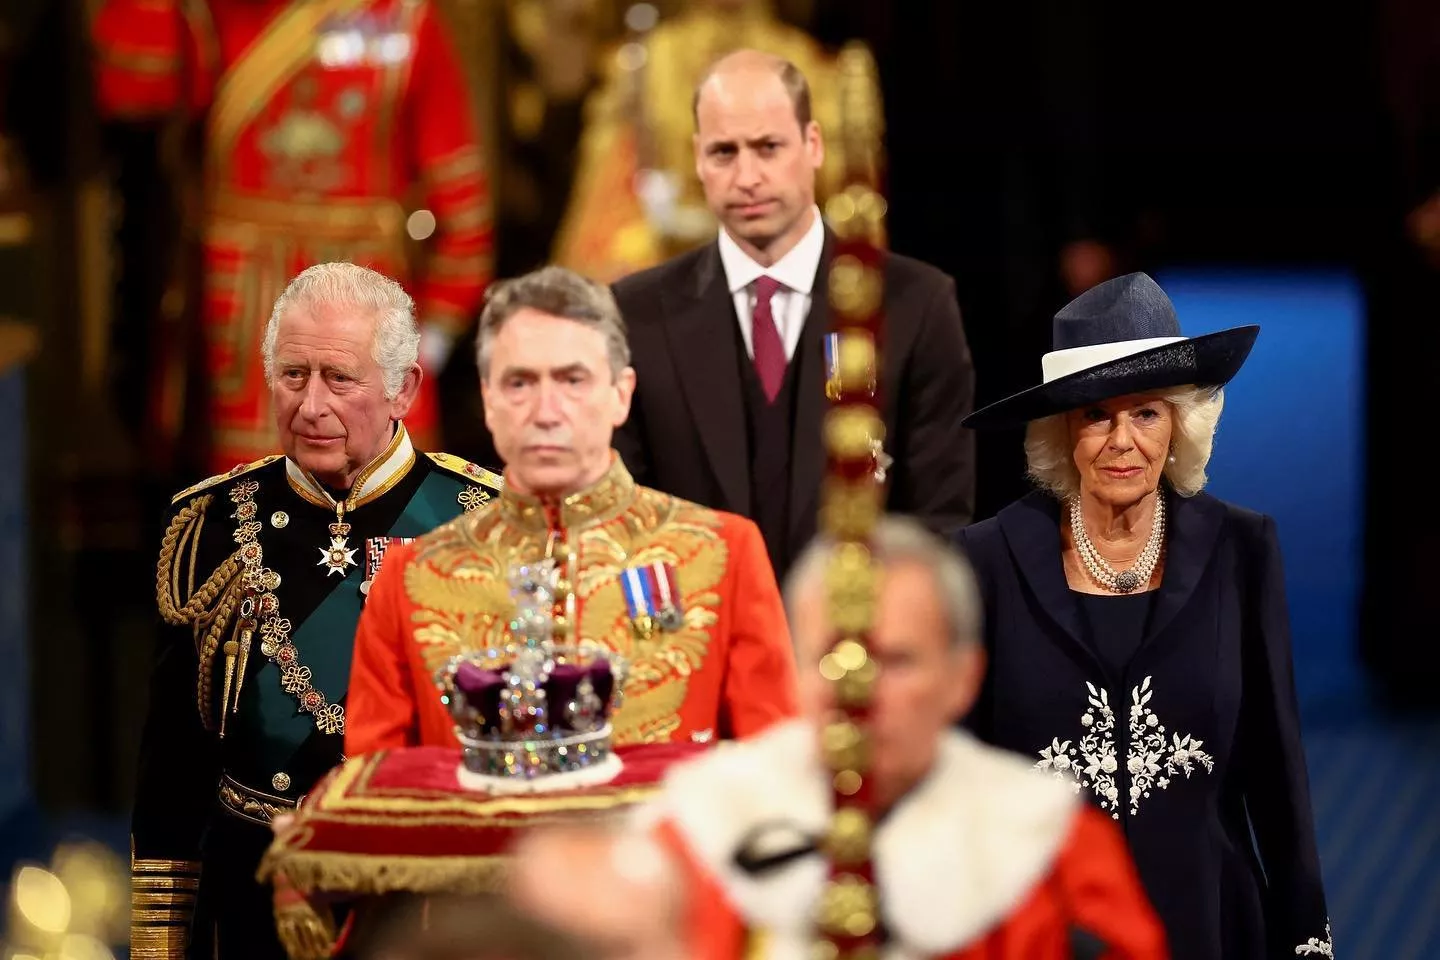 لحظة تاريخية: غياب الملكة اليزابيث لأول مرّة عن افتتاح البرلمان وحلول الأمير تشارلز مكانها